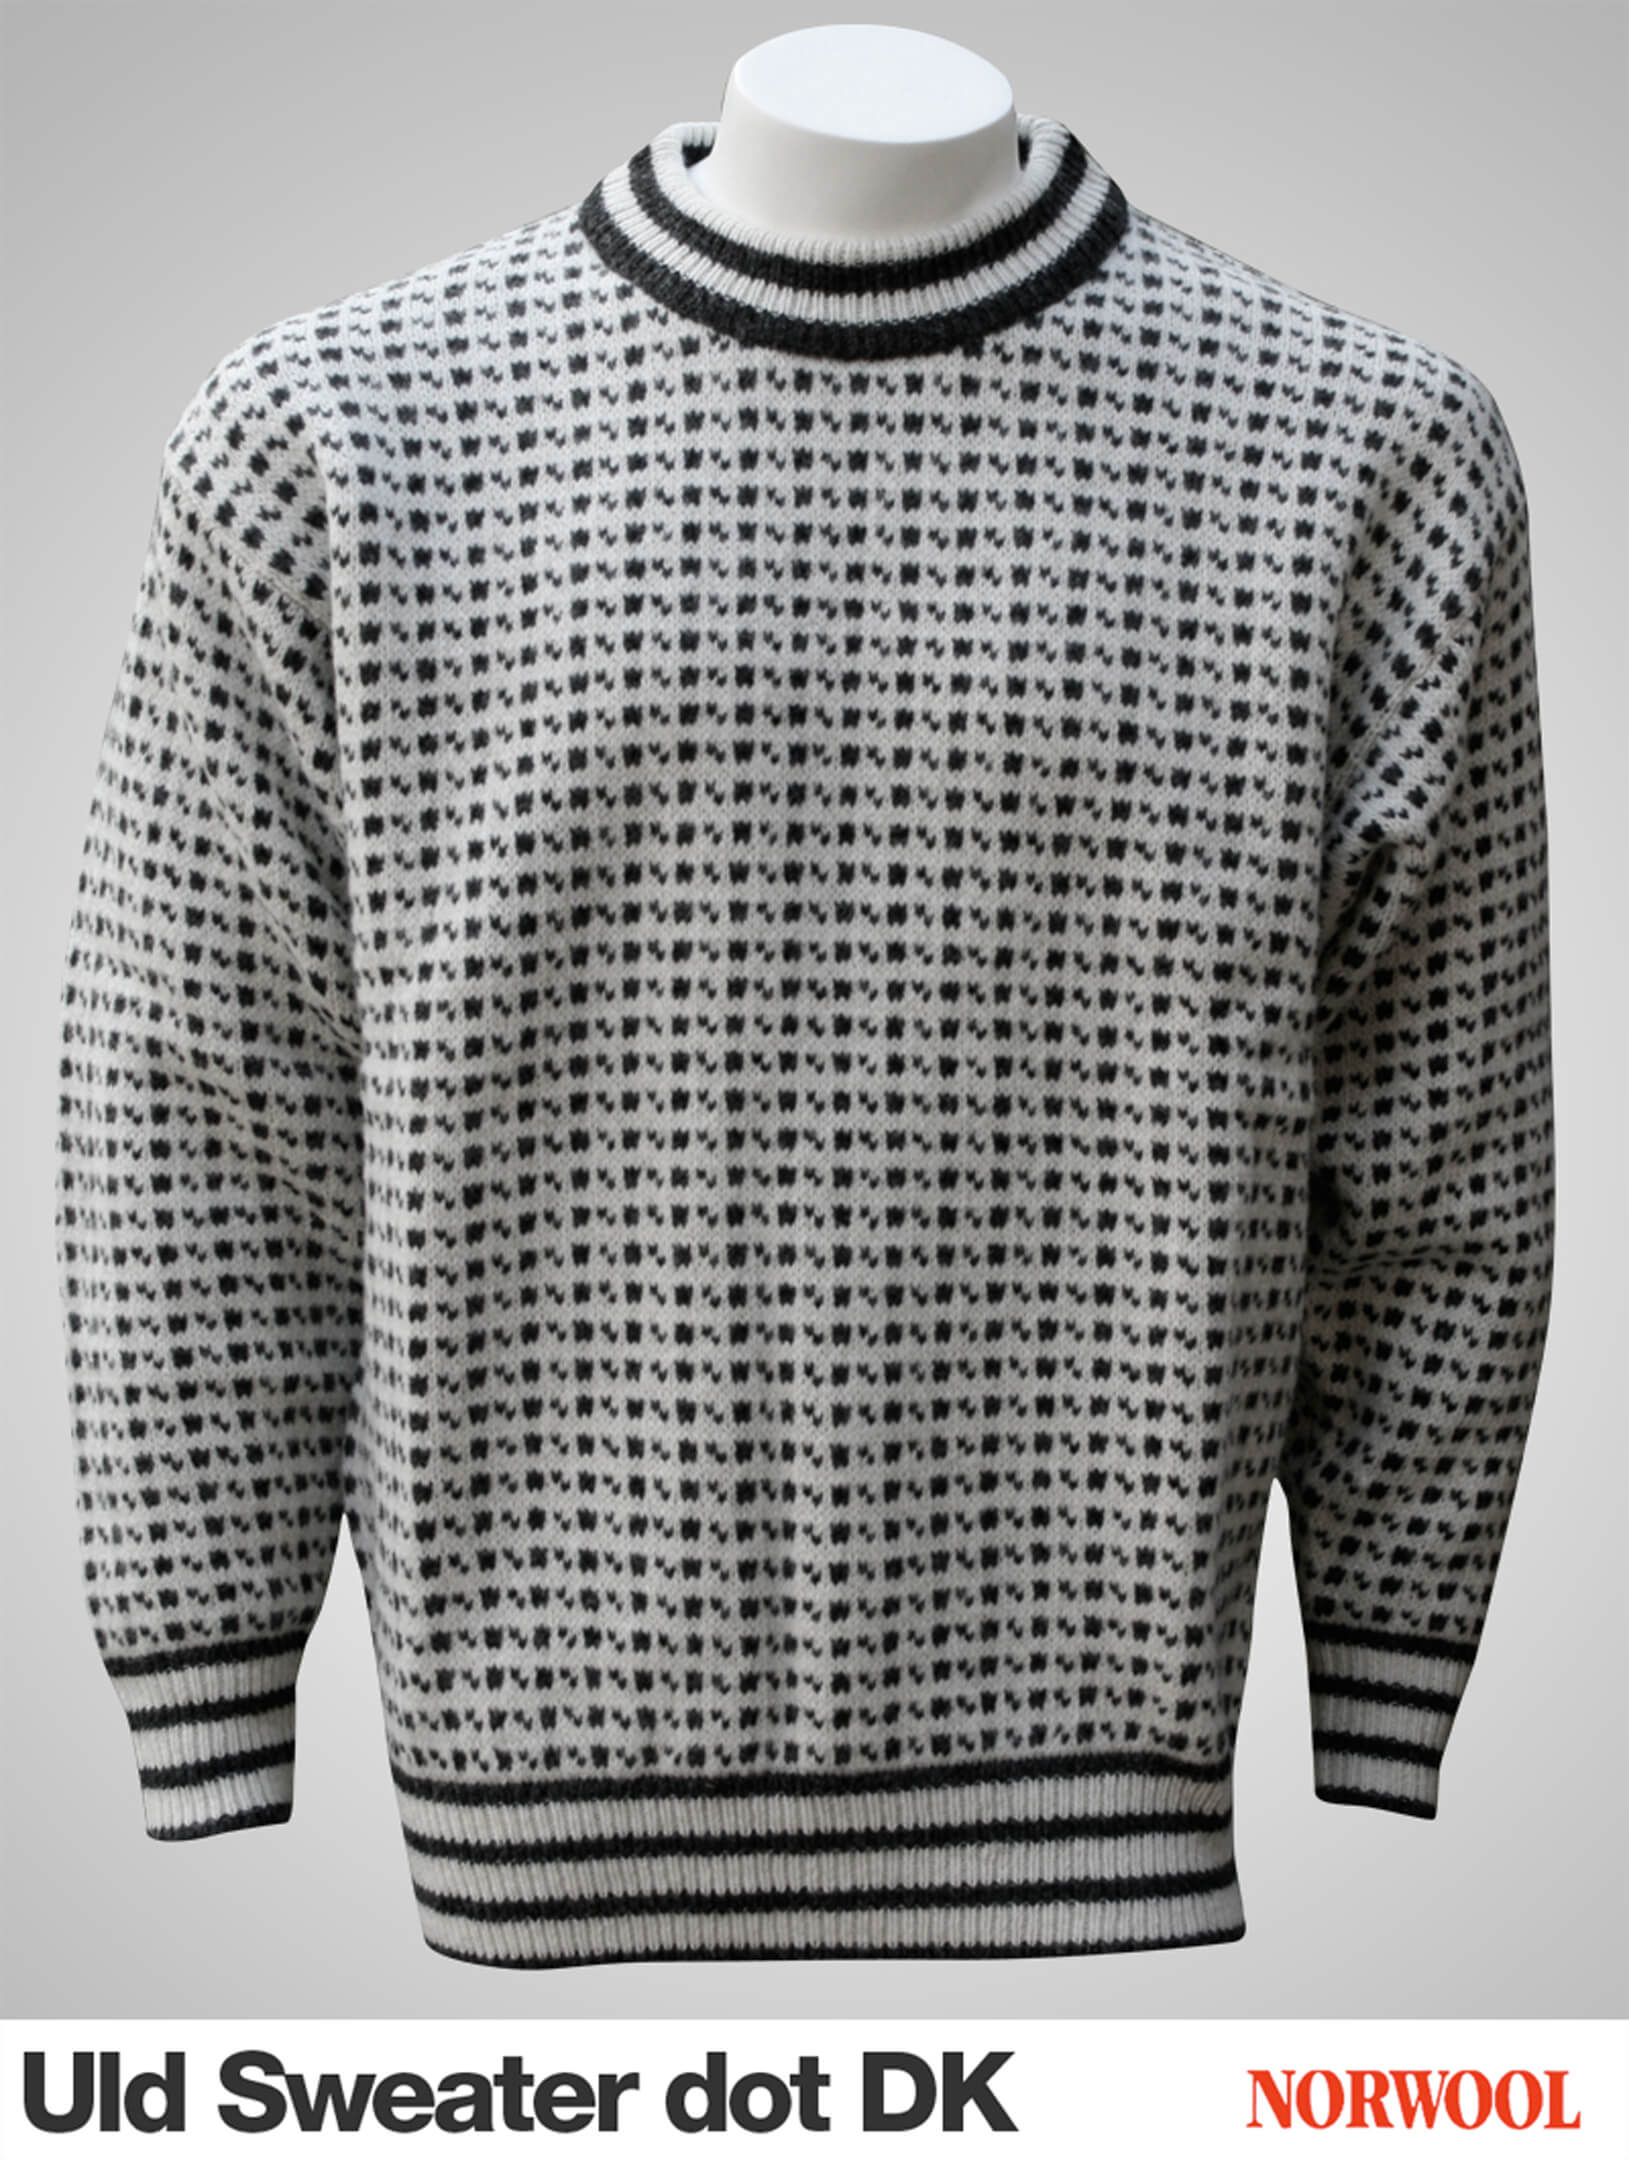 Original Færøsk Sweater af